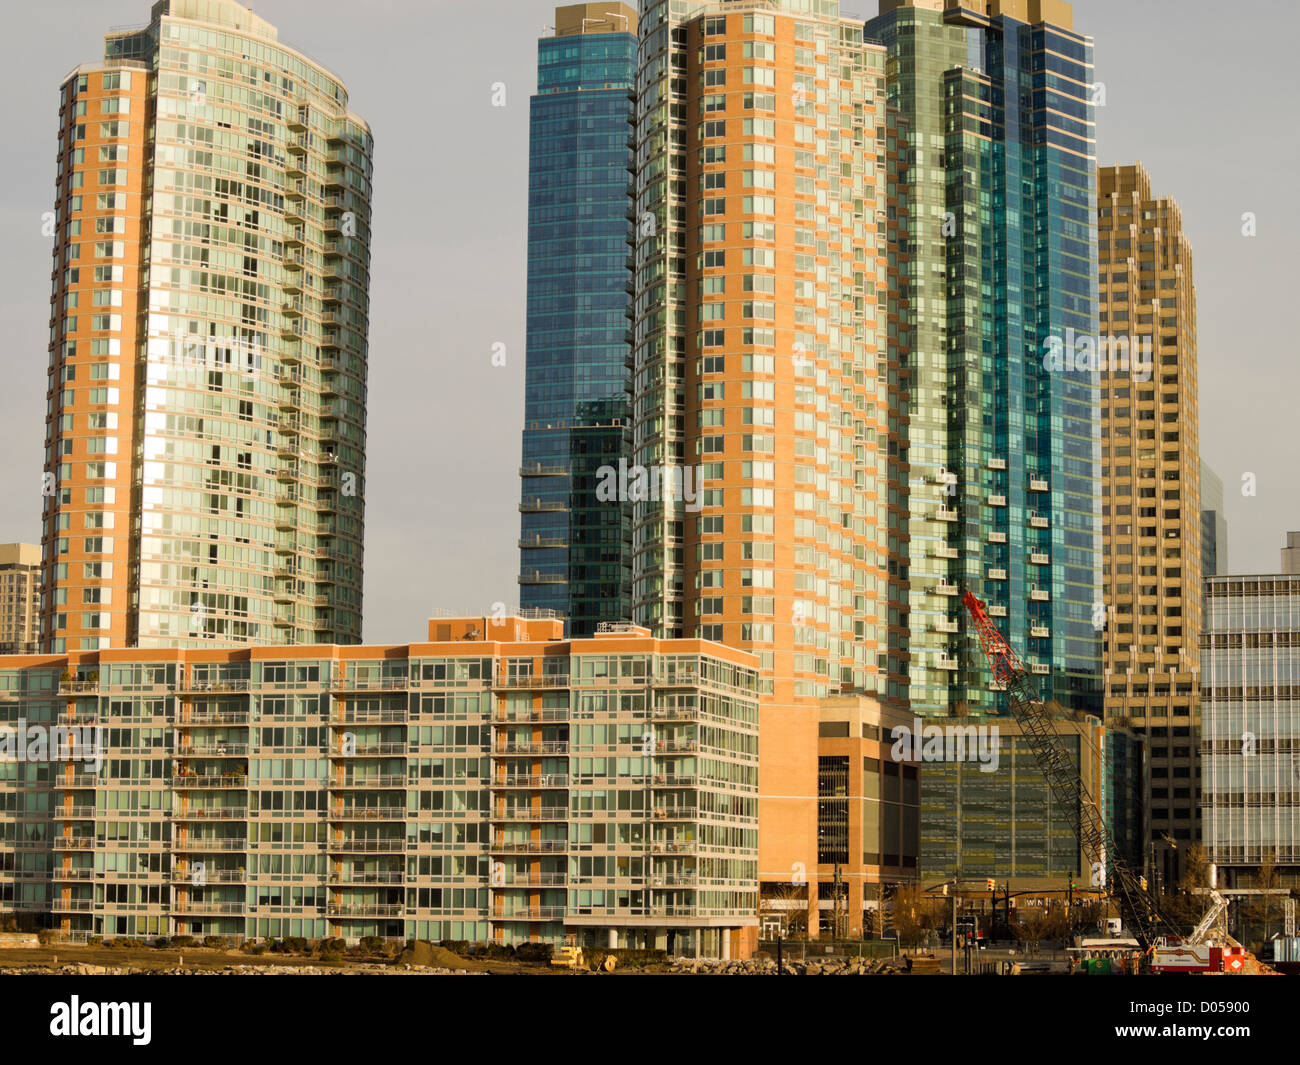 Les immeubles à appartements, Newport, Jersey City, NJ, USA Banque D'Images